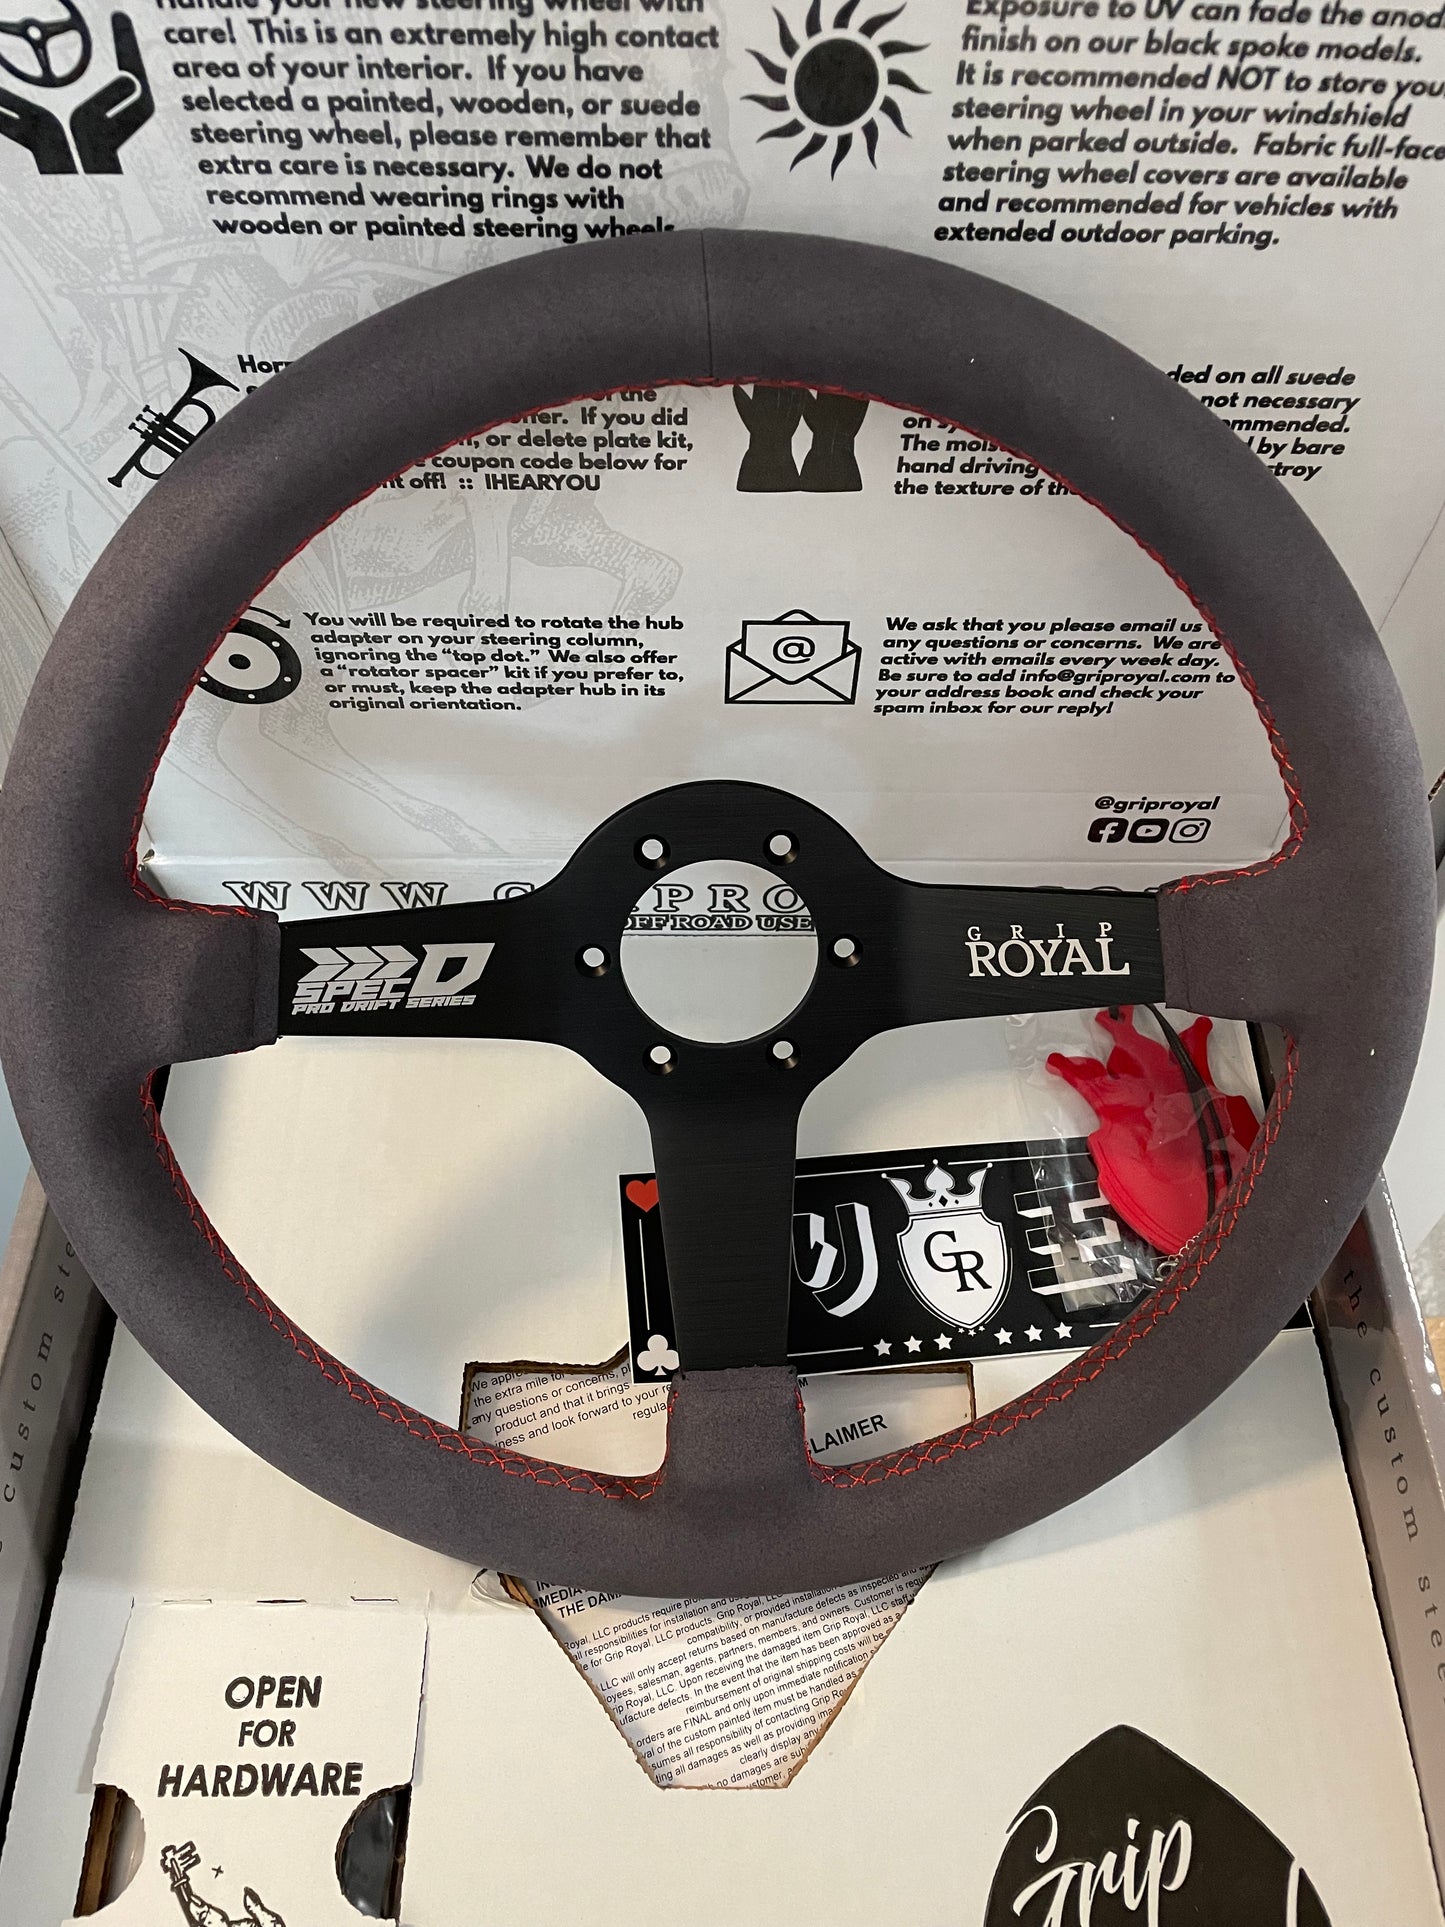 Grip Royal / Spec-D Race Wheel